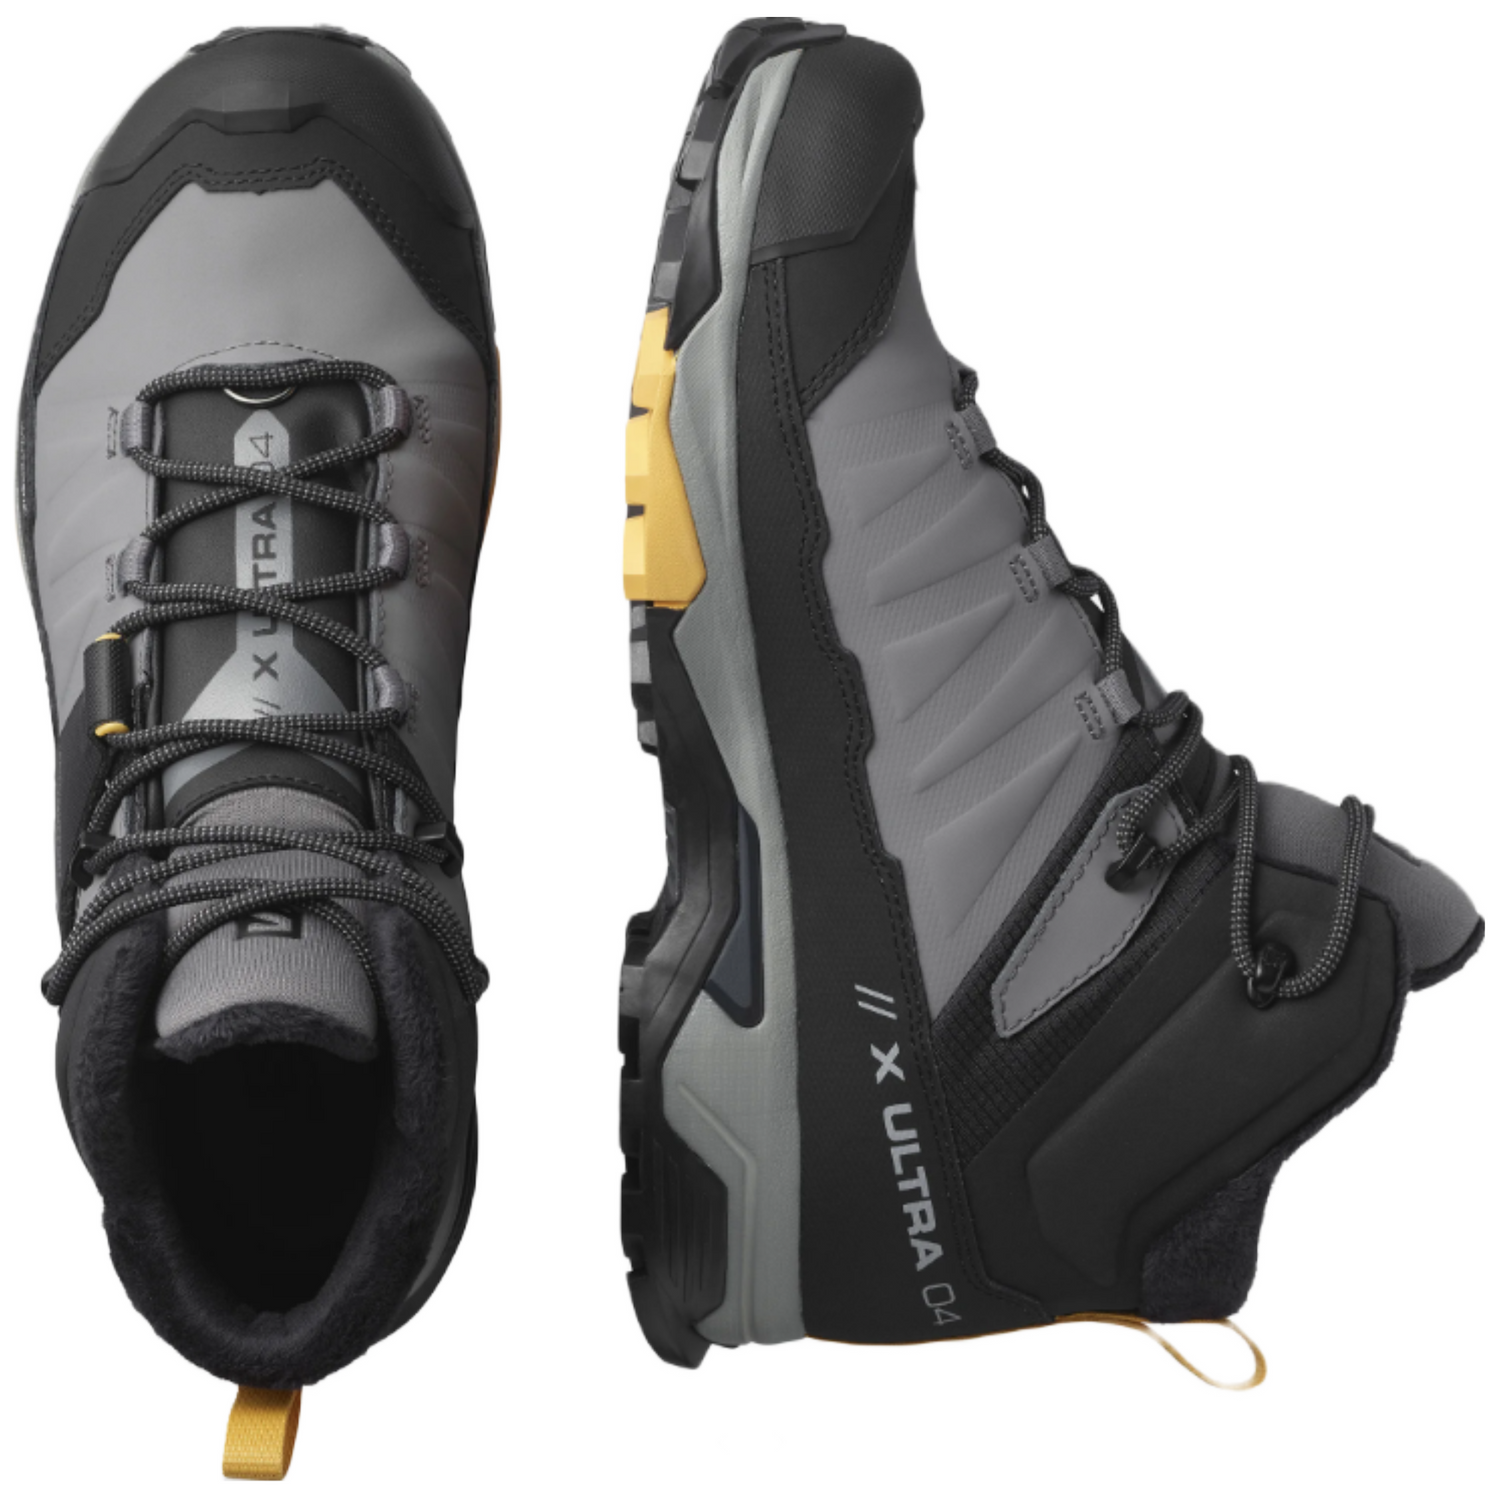 Salomon X Ultra 4 Mid TS Waterproof Winter Boots - Men's